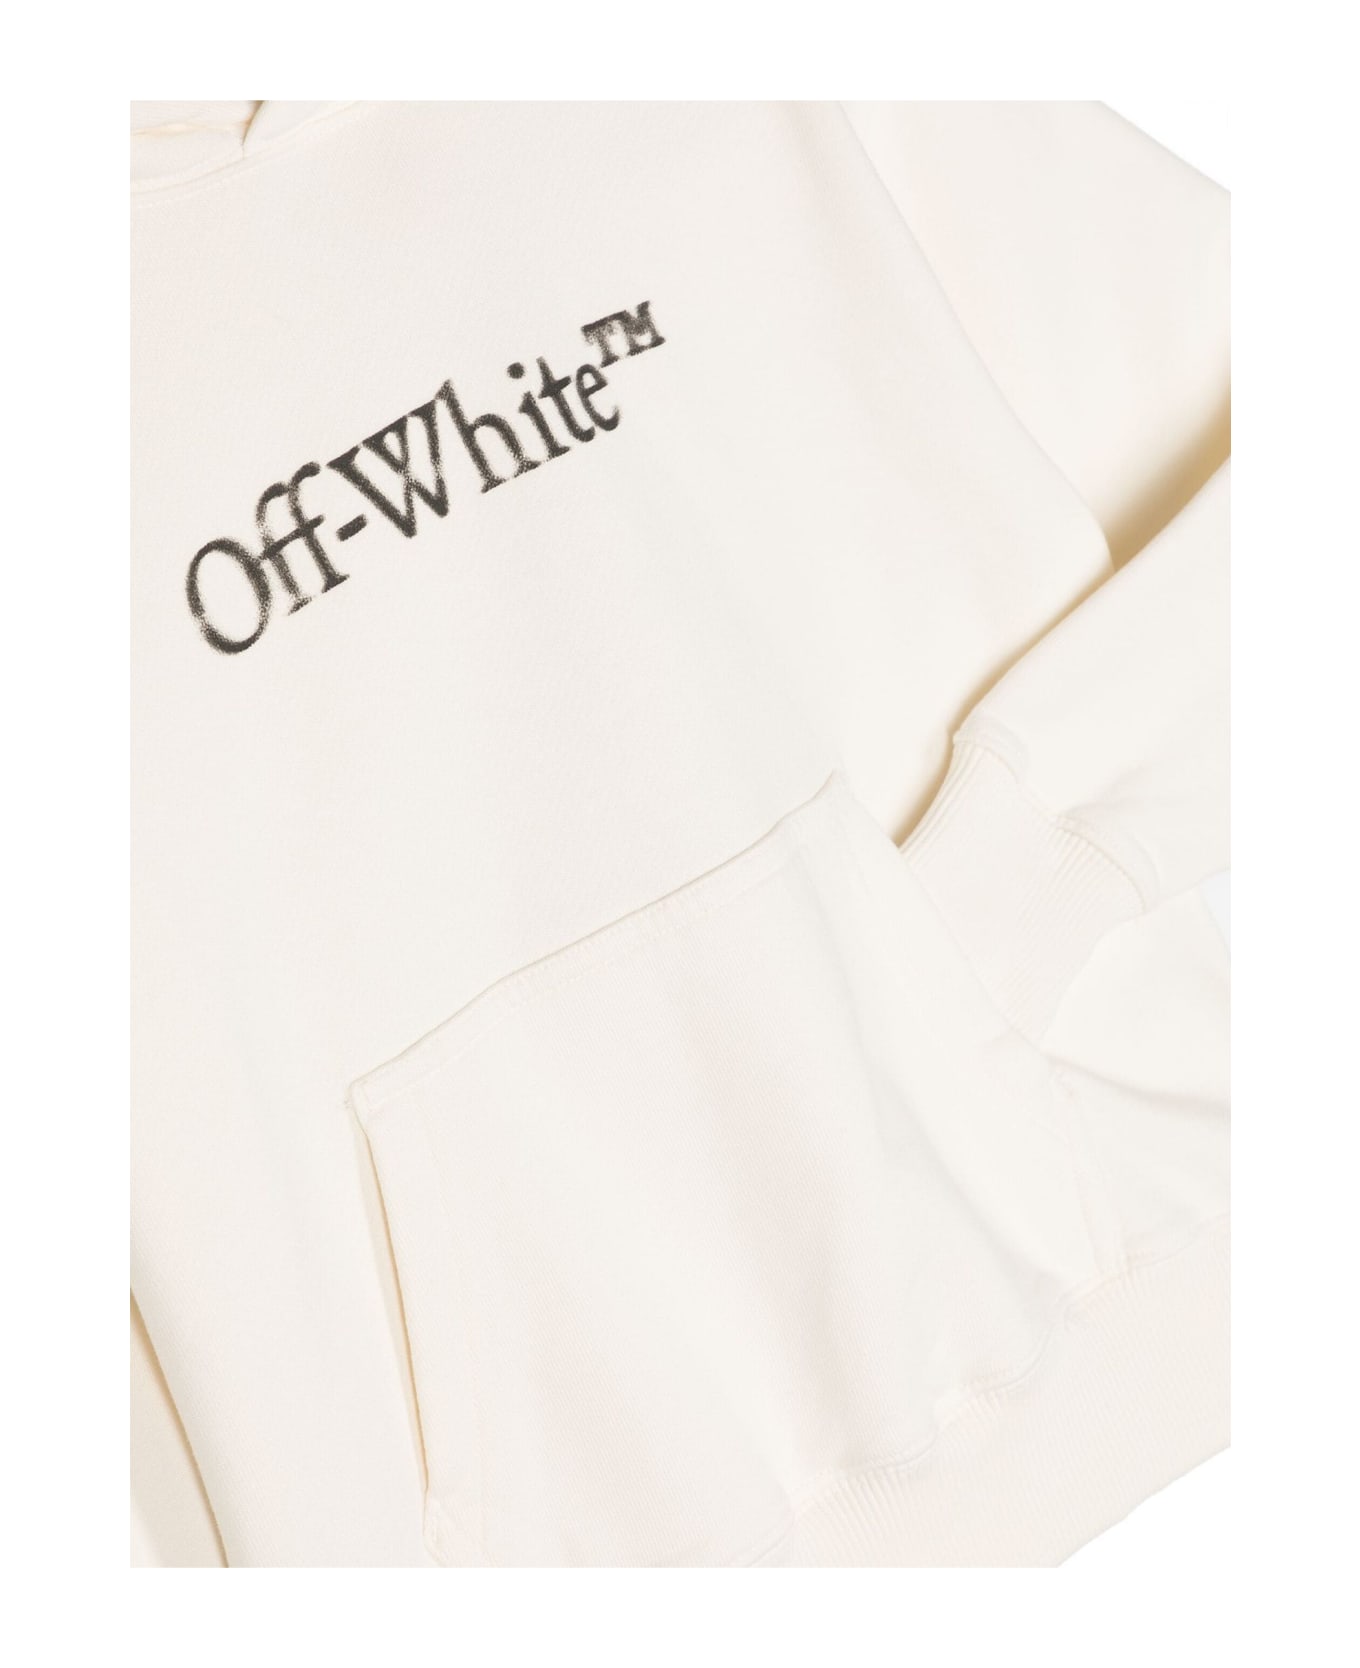 Off-White White Cotton Hoodie - Off White